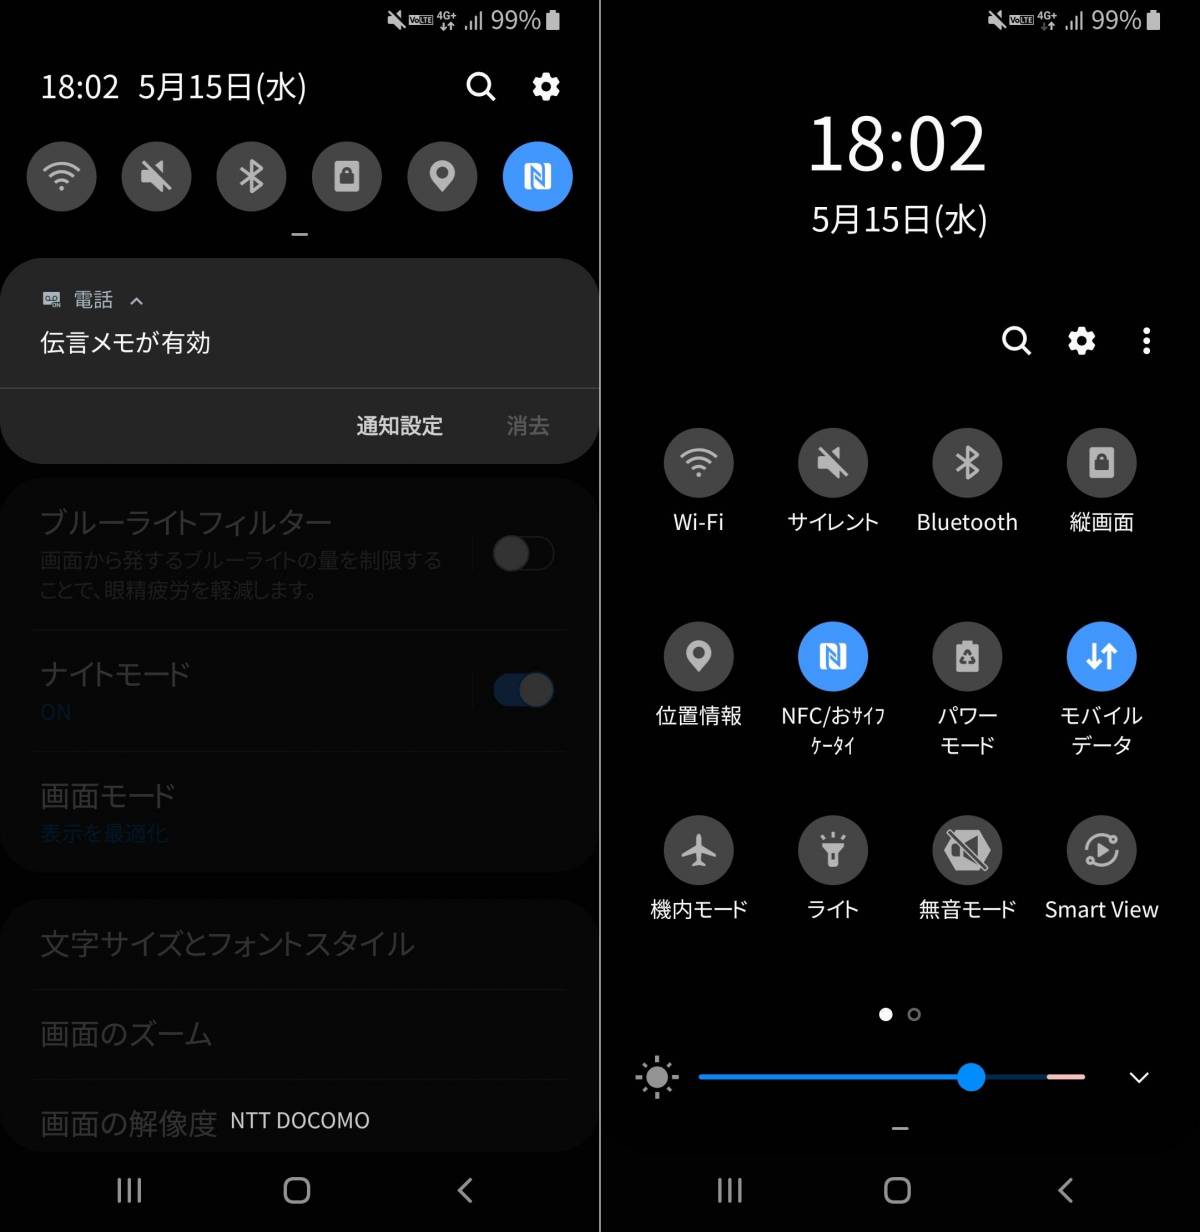 ダークモード 対応アプリ サービスまとめ Iphone Android Pc Appliv Topics